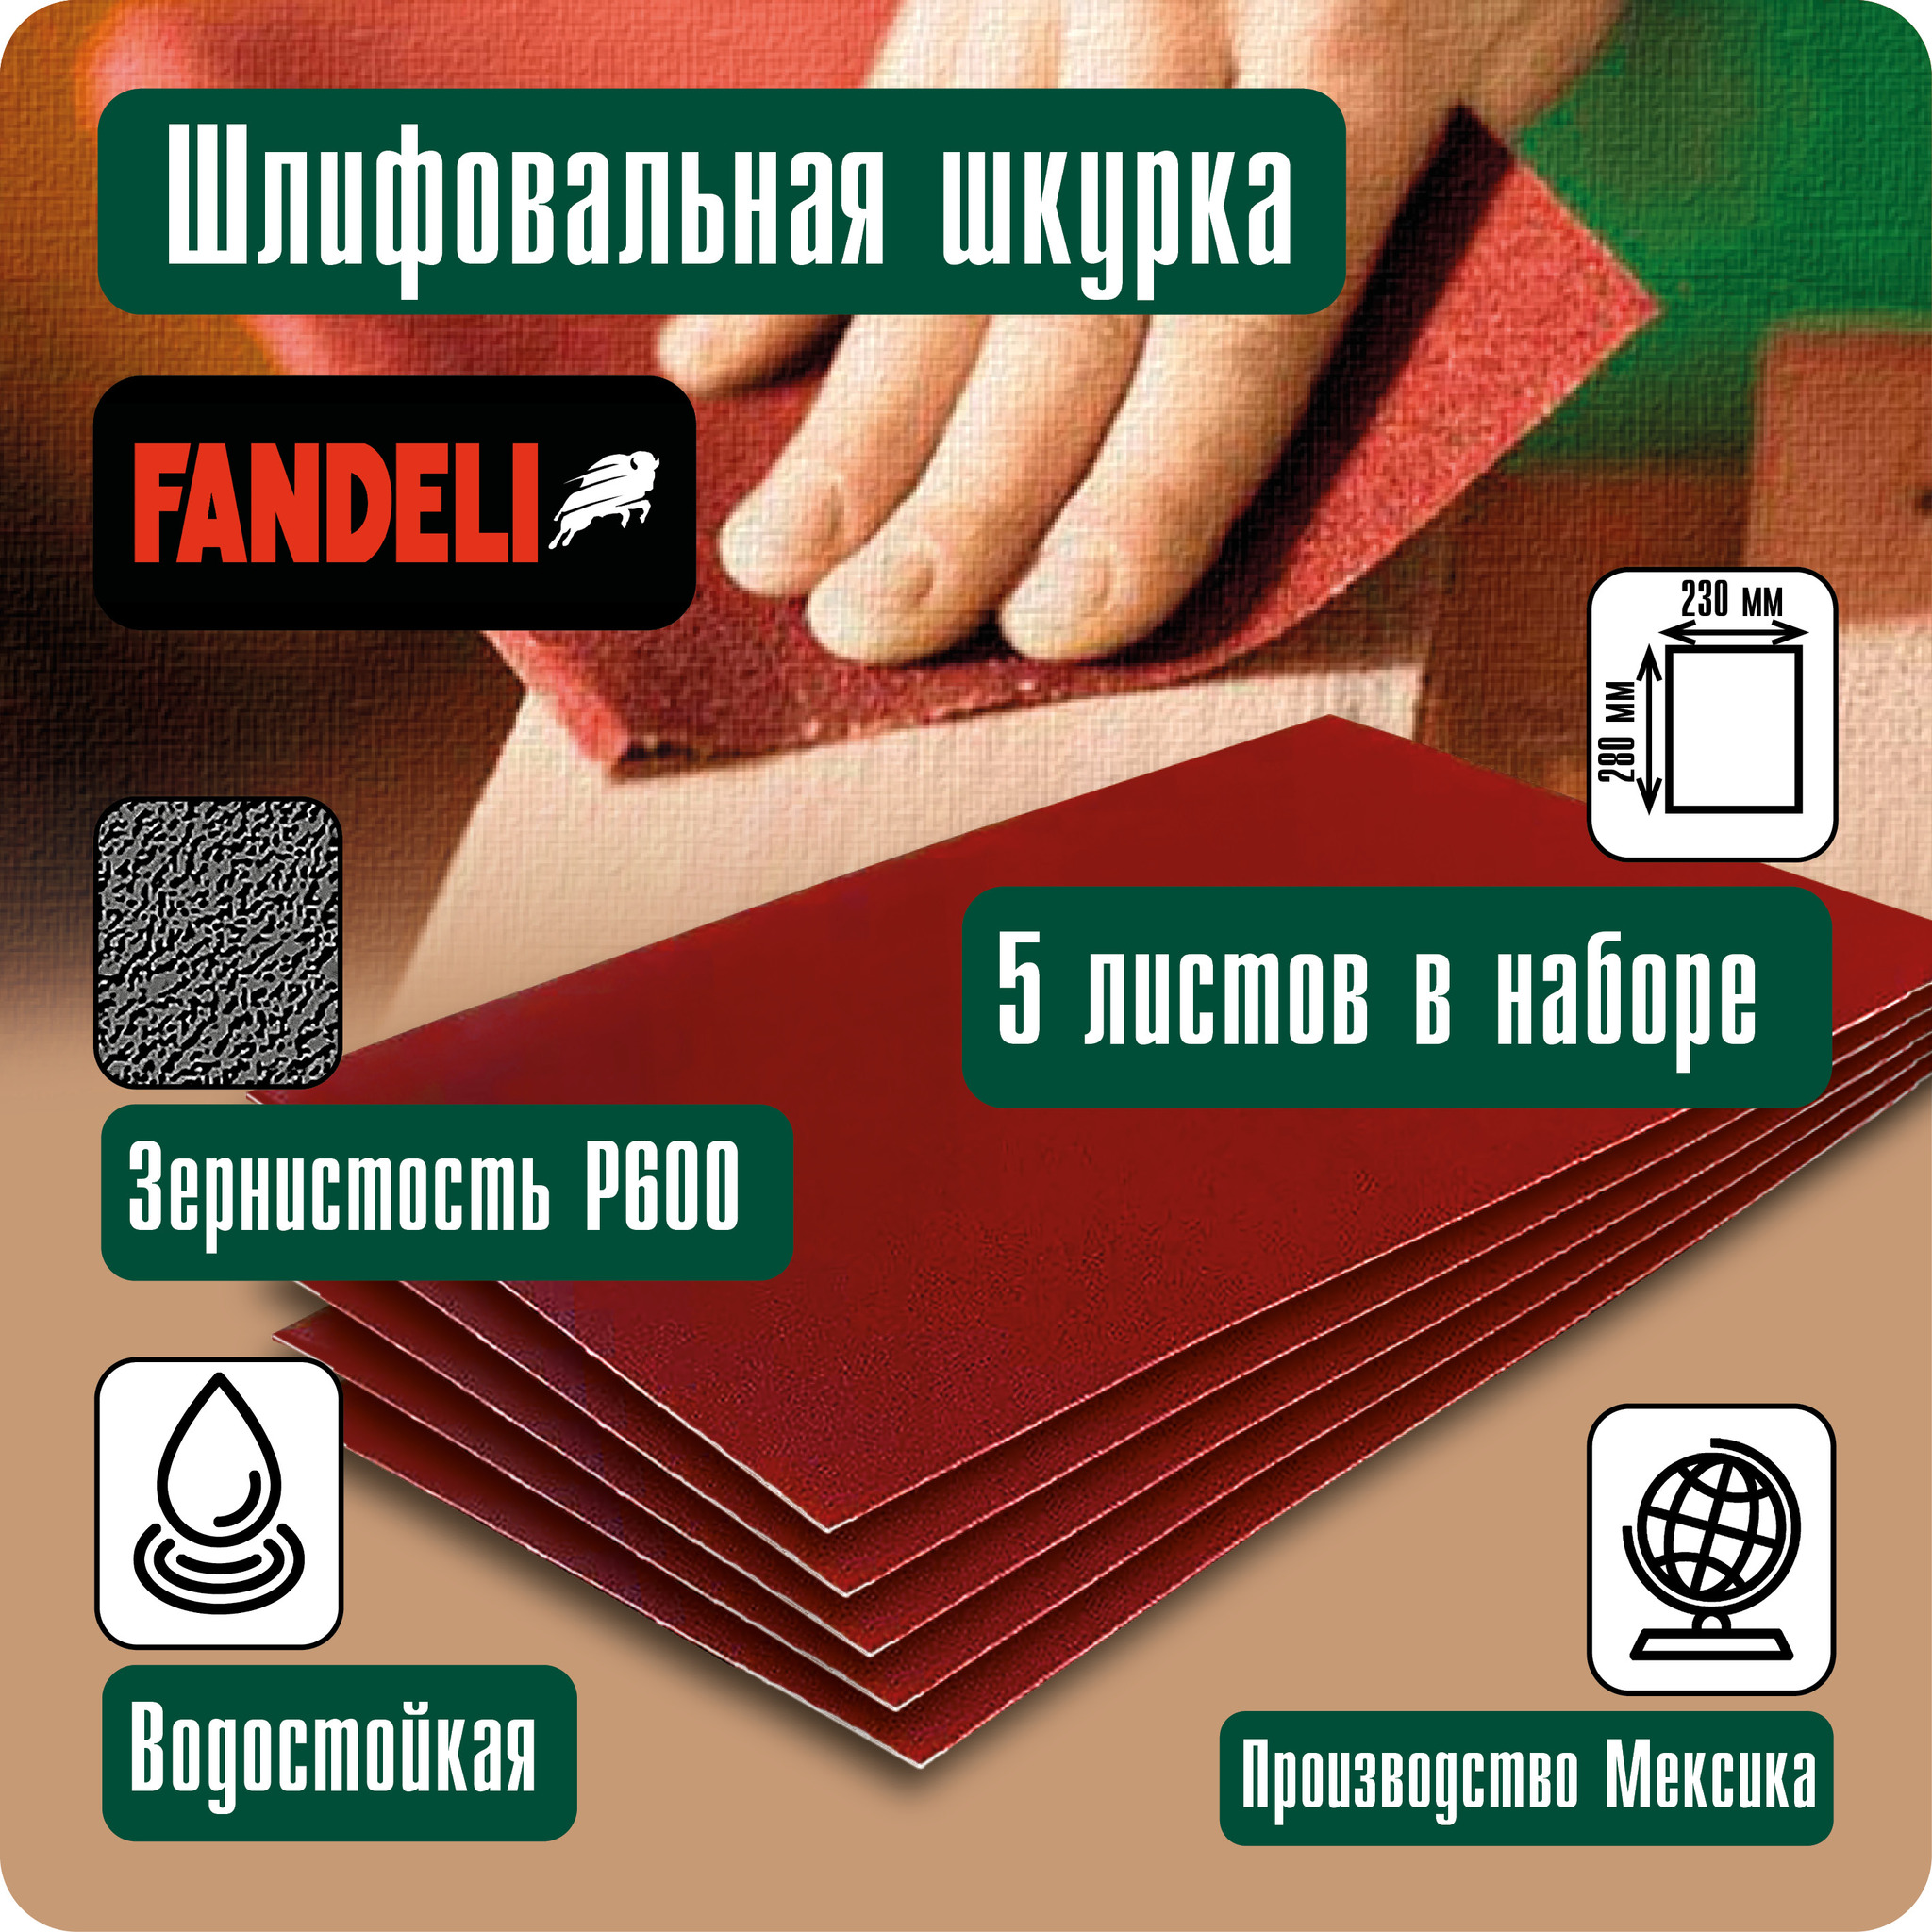 Наждачная бумага Fandeli шлифовальная шкурка 5шт P600 5ФШ600 шлифовальная шкурка pegas pneumatic